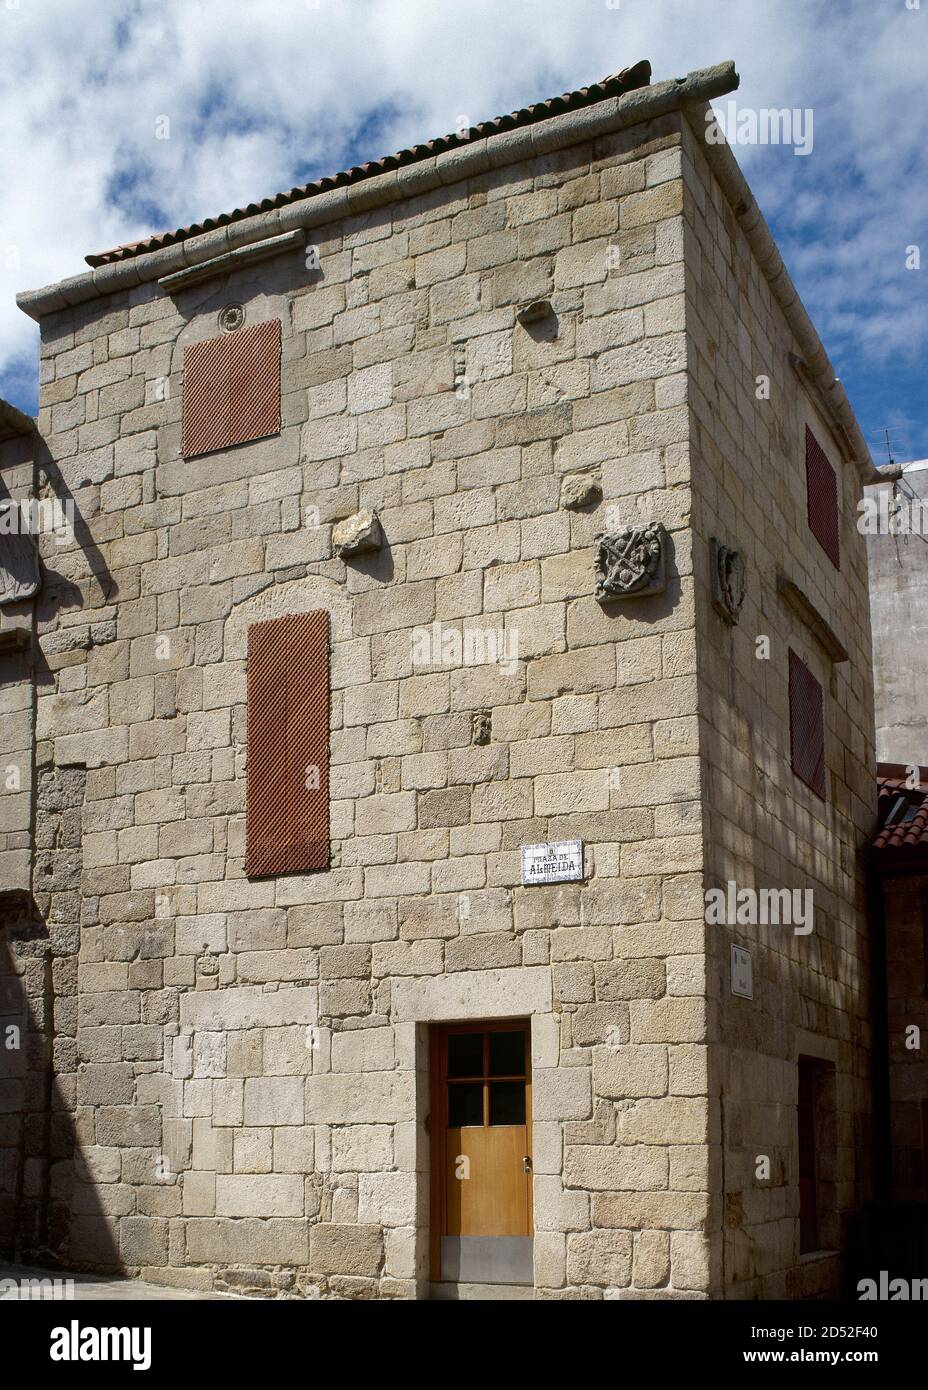 Spagna, Galizia, provincia di Pontevedra, Vigo. Casa de Arines o CETA. Casa signorile risalente al 15 ° secolo. Stile tardo gotico. Situato in Plaza Almeida, è l'edificio più antico della città vecchia. Foto Stock